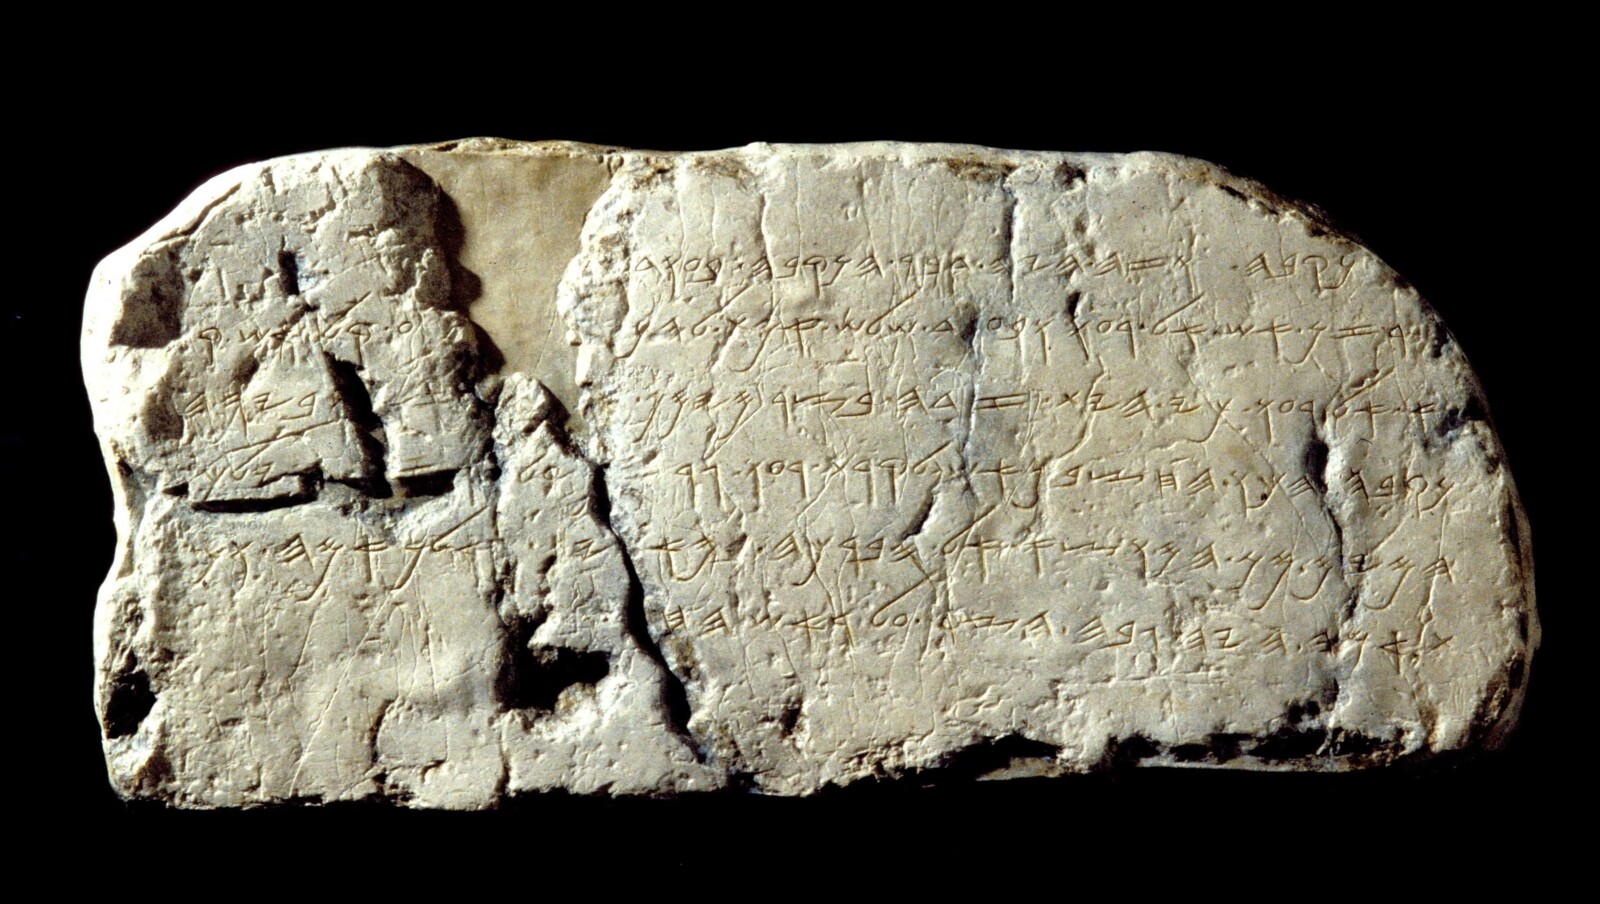 רפליקה של כתובת השילוח שנחשפה בעיר דוד, בסמוך לבריכת השילוח (צילום: זאב רדובן, עיר דוד)